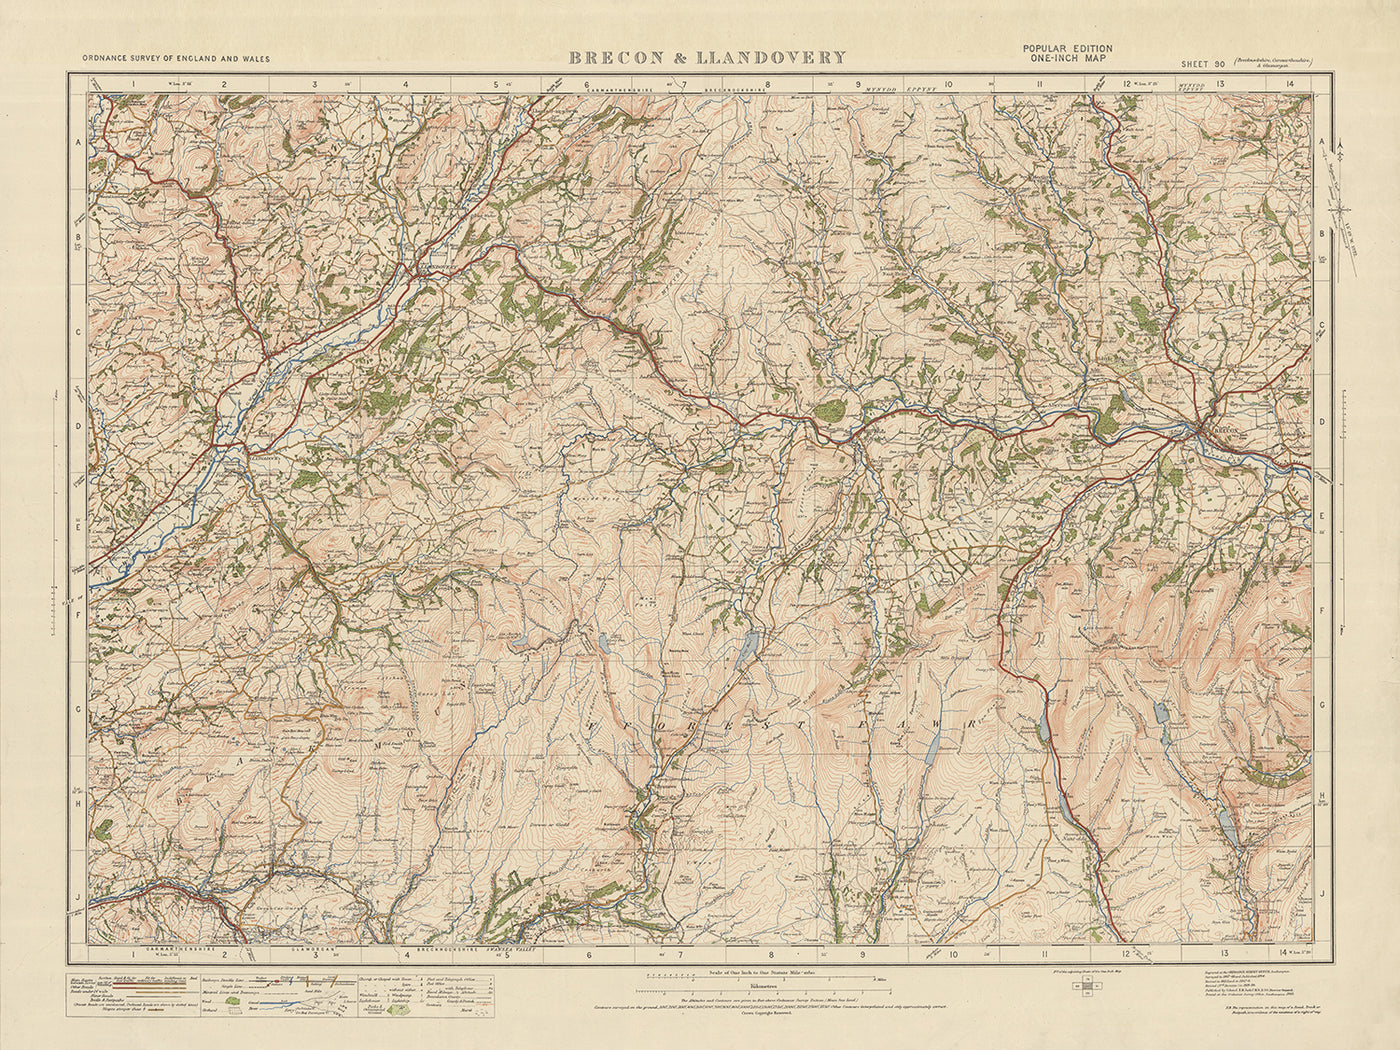 Mapa de Old Ordnance Survey, hoja 90 - Brecon & Llandovery, 1925: Llangadog, Llanwrda, Glanaman, Centro Nacional Showcaves de Gales, Parque Nacional Bannau Brycheiniog